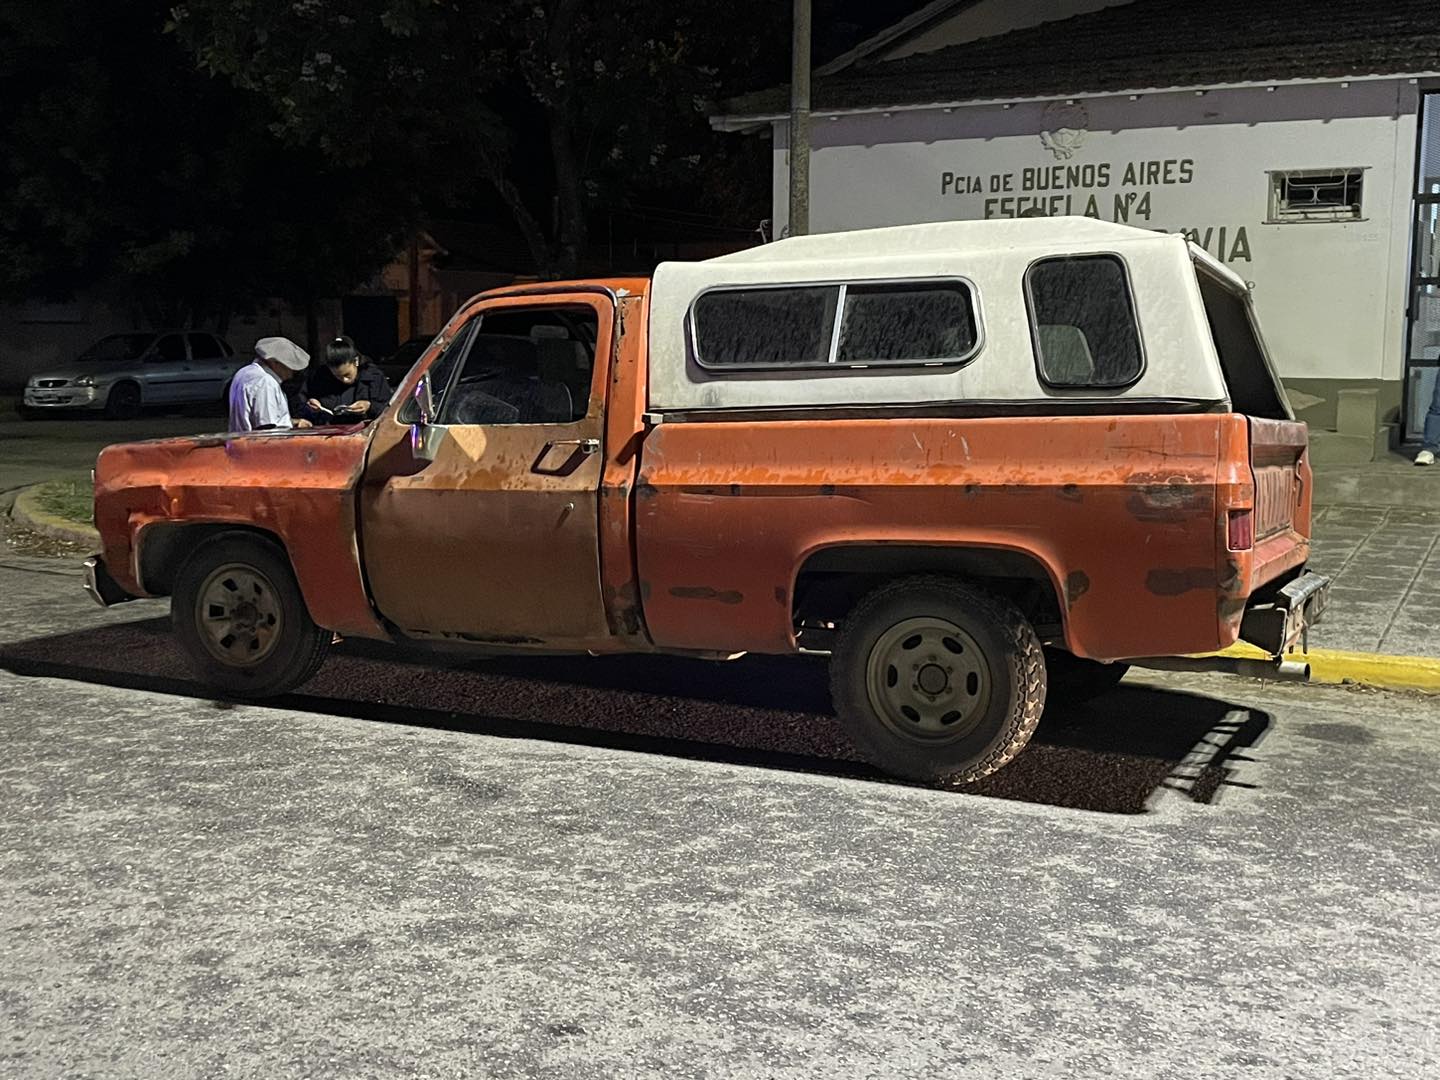 Chocaron una moto y una camioneta: Ambos vehículos retenidos por falta de documentación